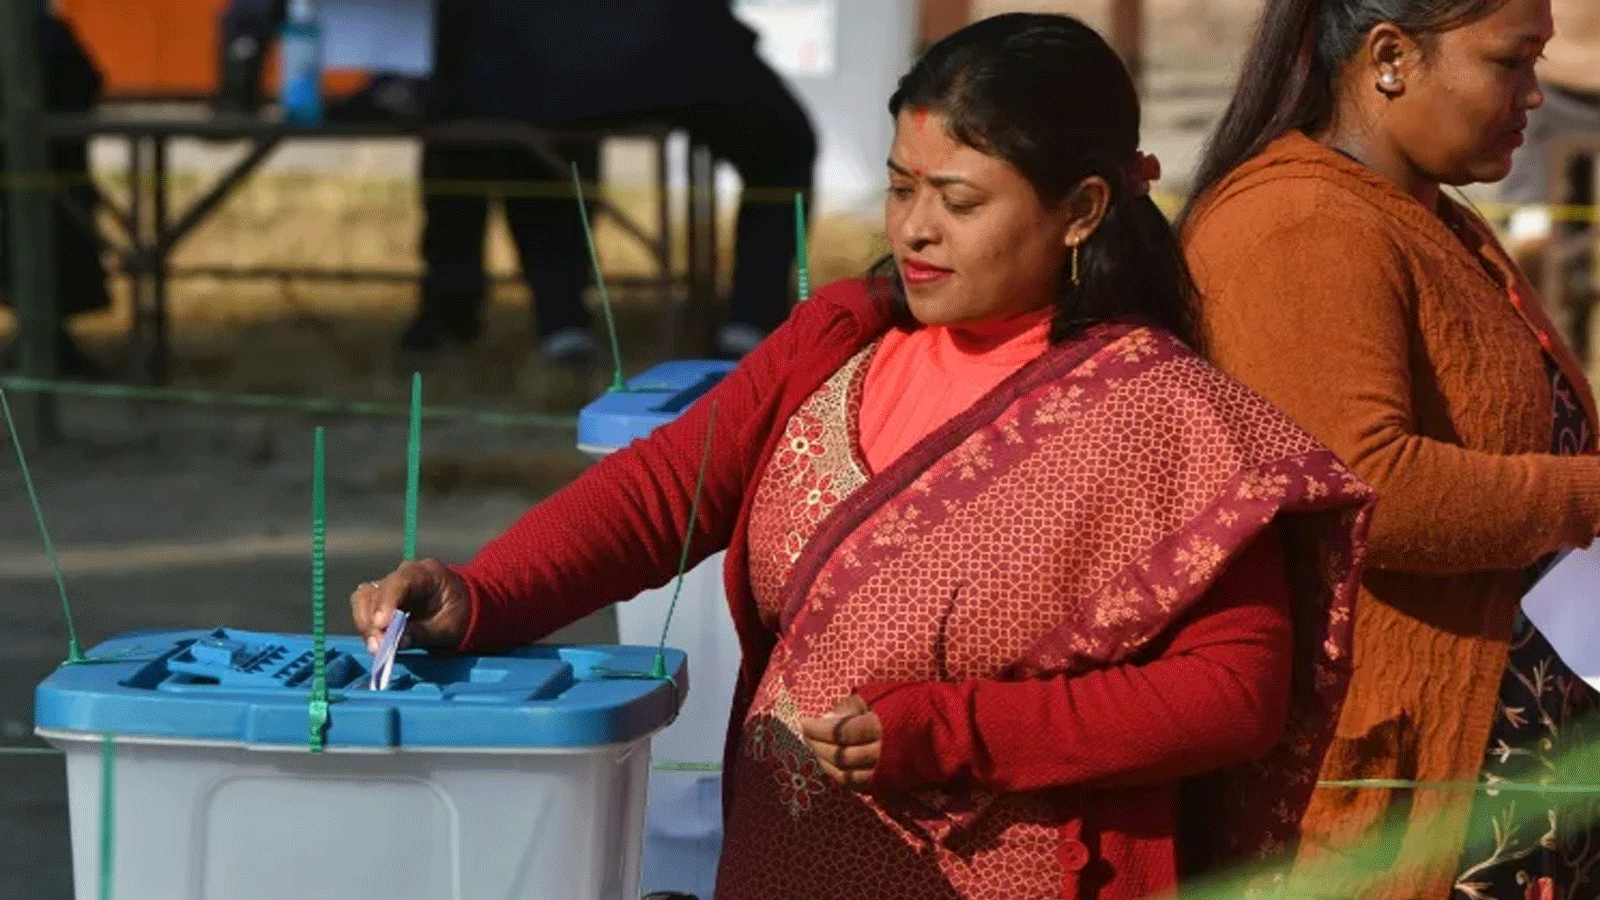 الناخبون النيباليون يدلون بأصواتهم لانتخاب برلمان جديد اليوم الاحد فى مسابقة سيطرت عليها مشاعر الإحباط العامة من النخبة السياسية المسنة فى جمهورية الهيمالايا والقلق بشأن اقتصادها المترنح.